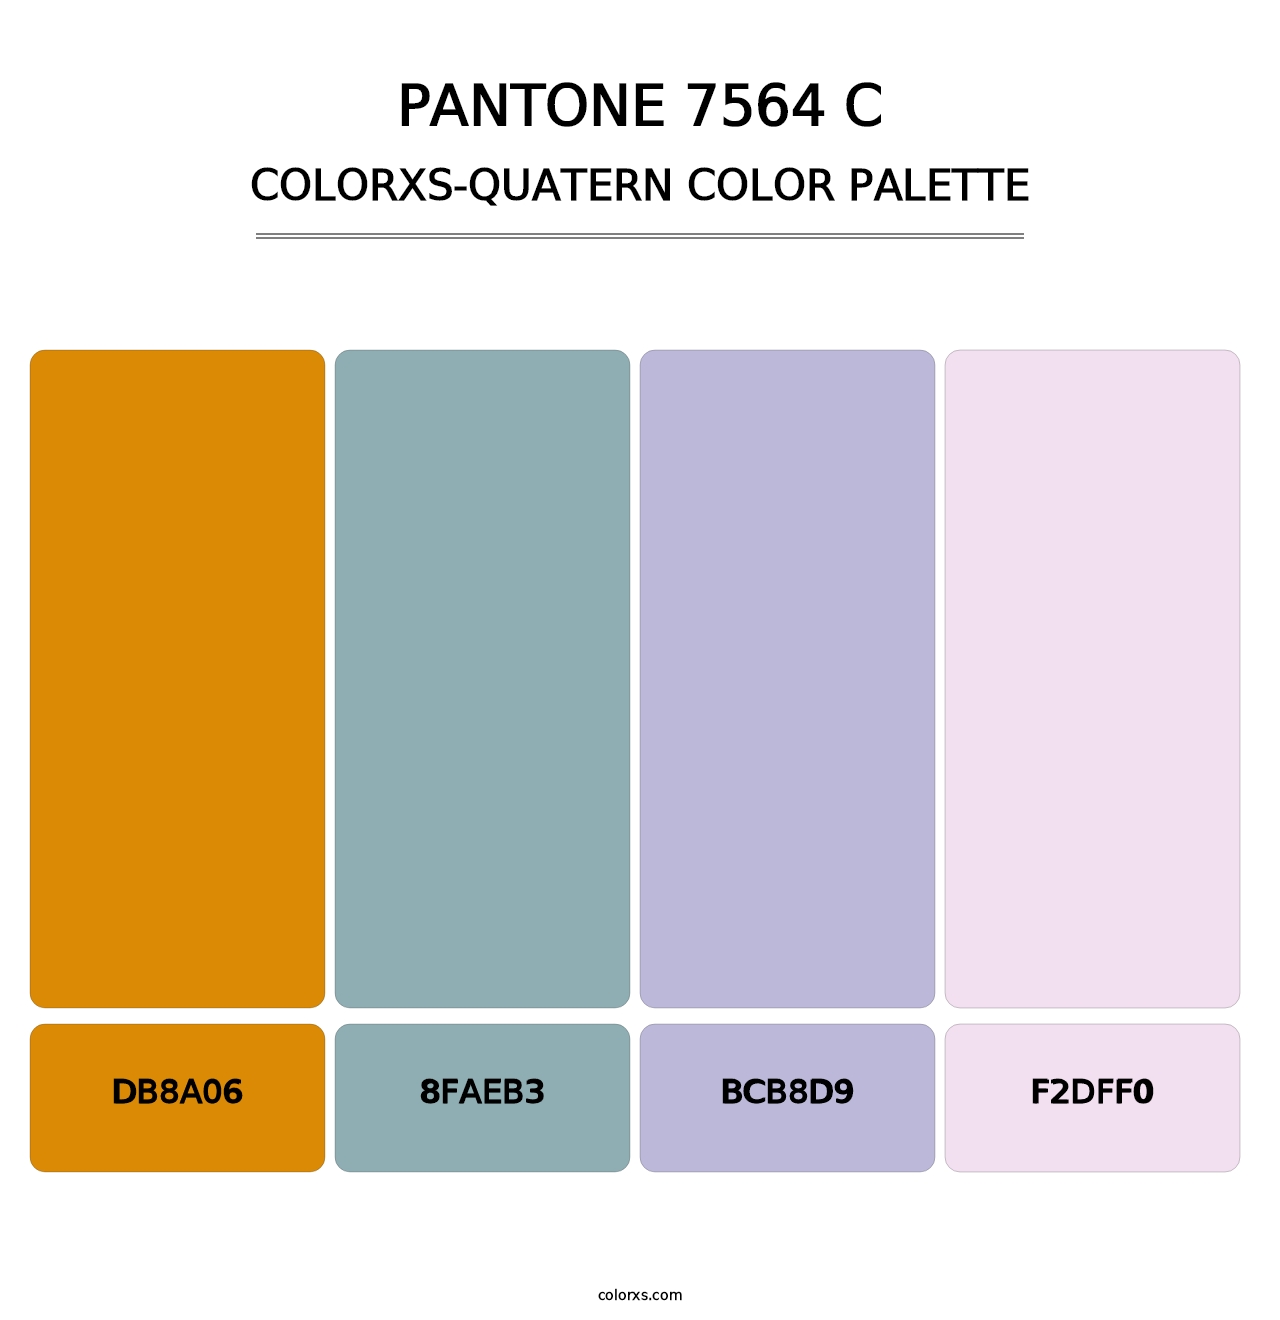 PANTONE 7564 C - Colorxs Quatern Palette